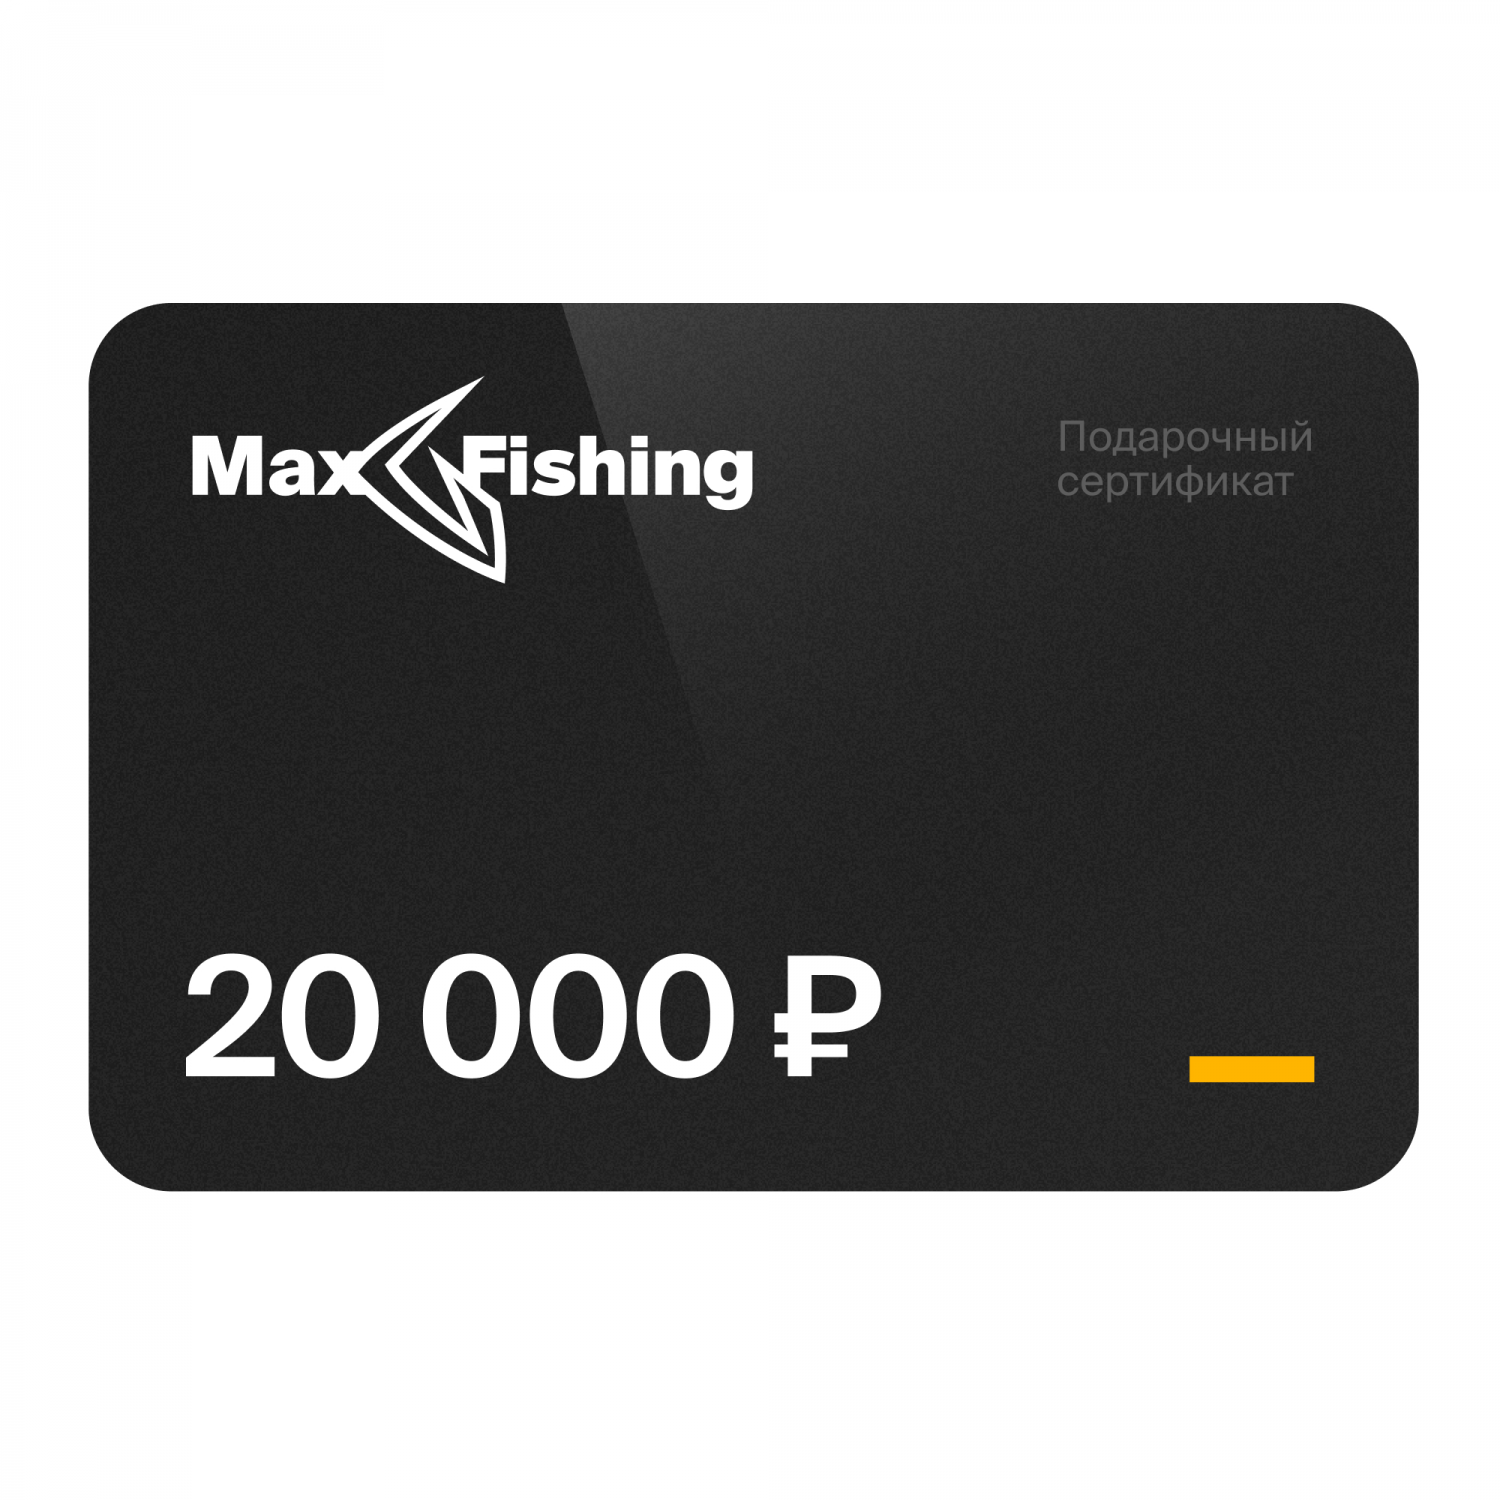 Подарочный сертификат MaxFishing 20 000 ₽ подарочный сертификат на 5 000 рублей